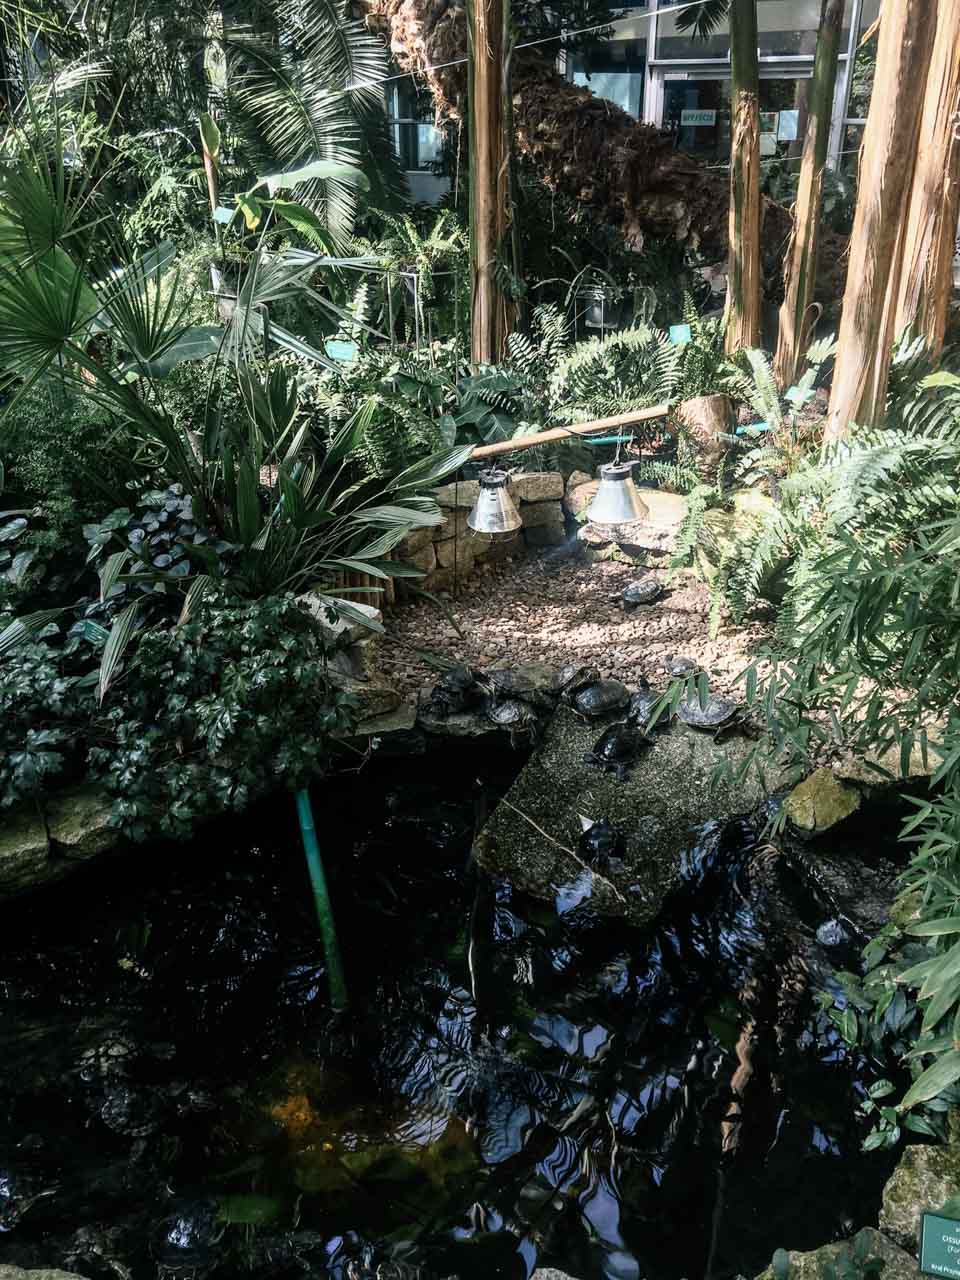 Turtles inside a palm house